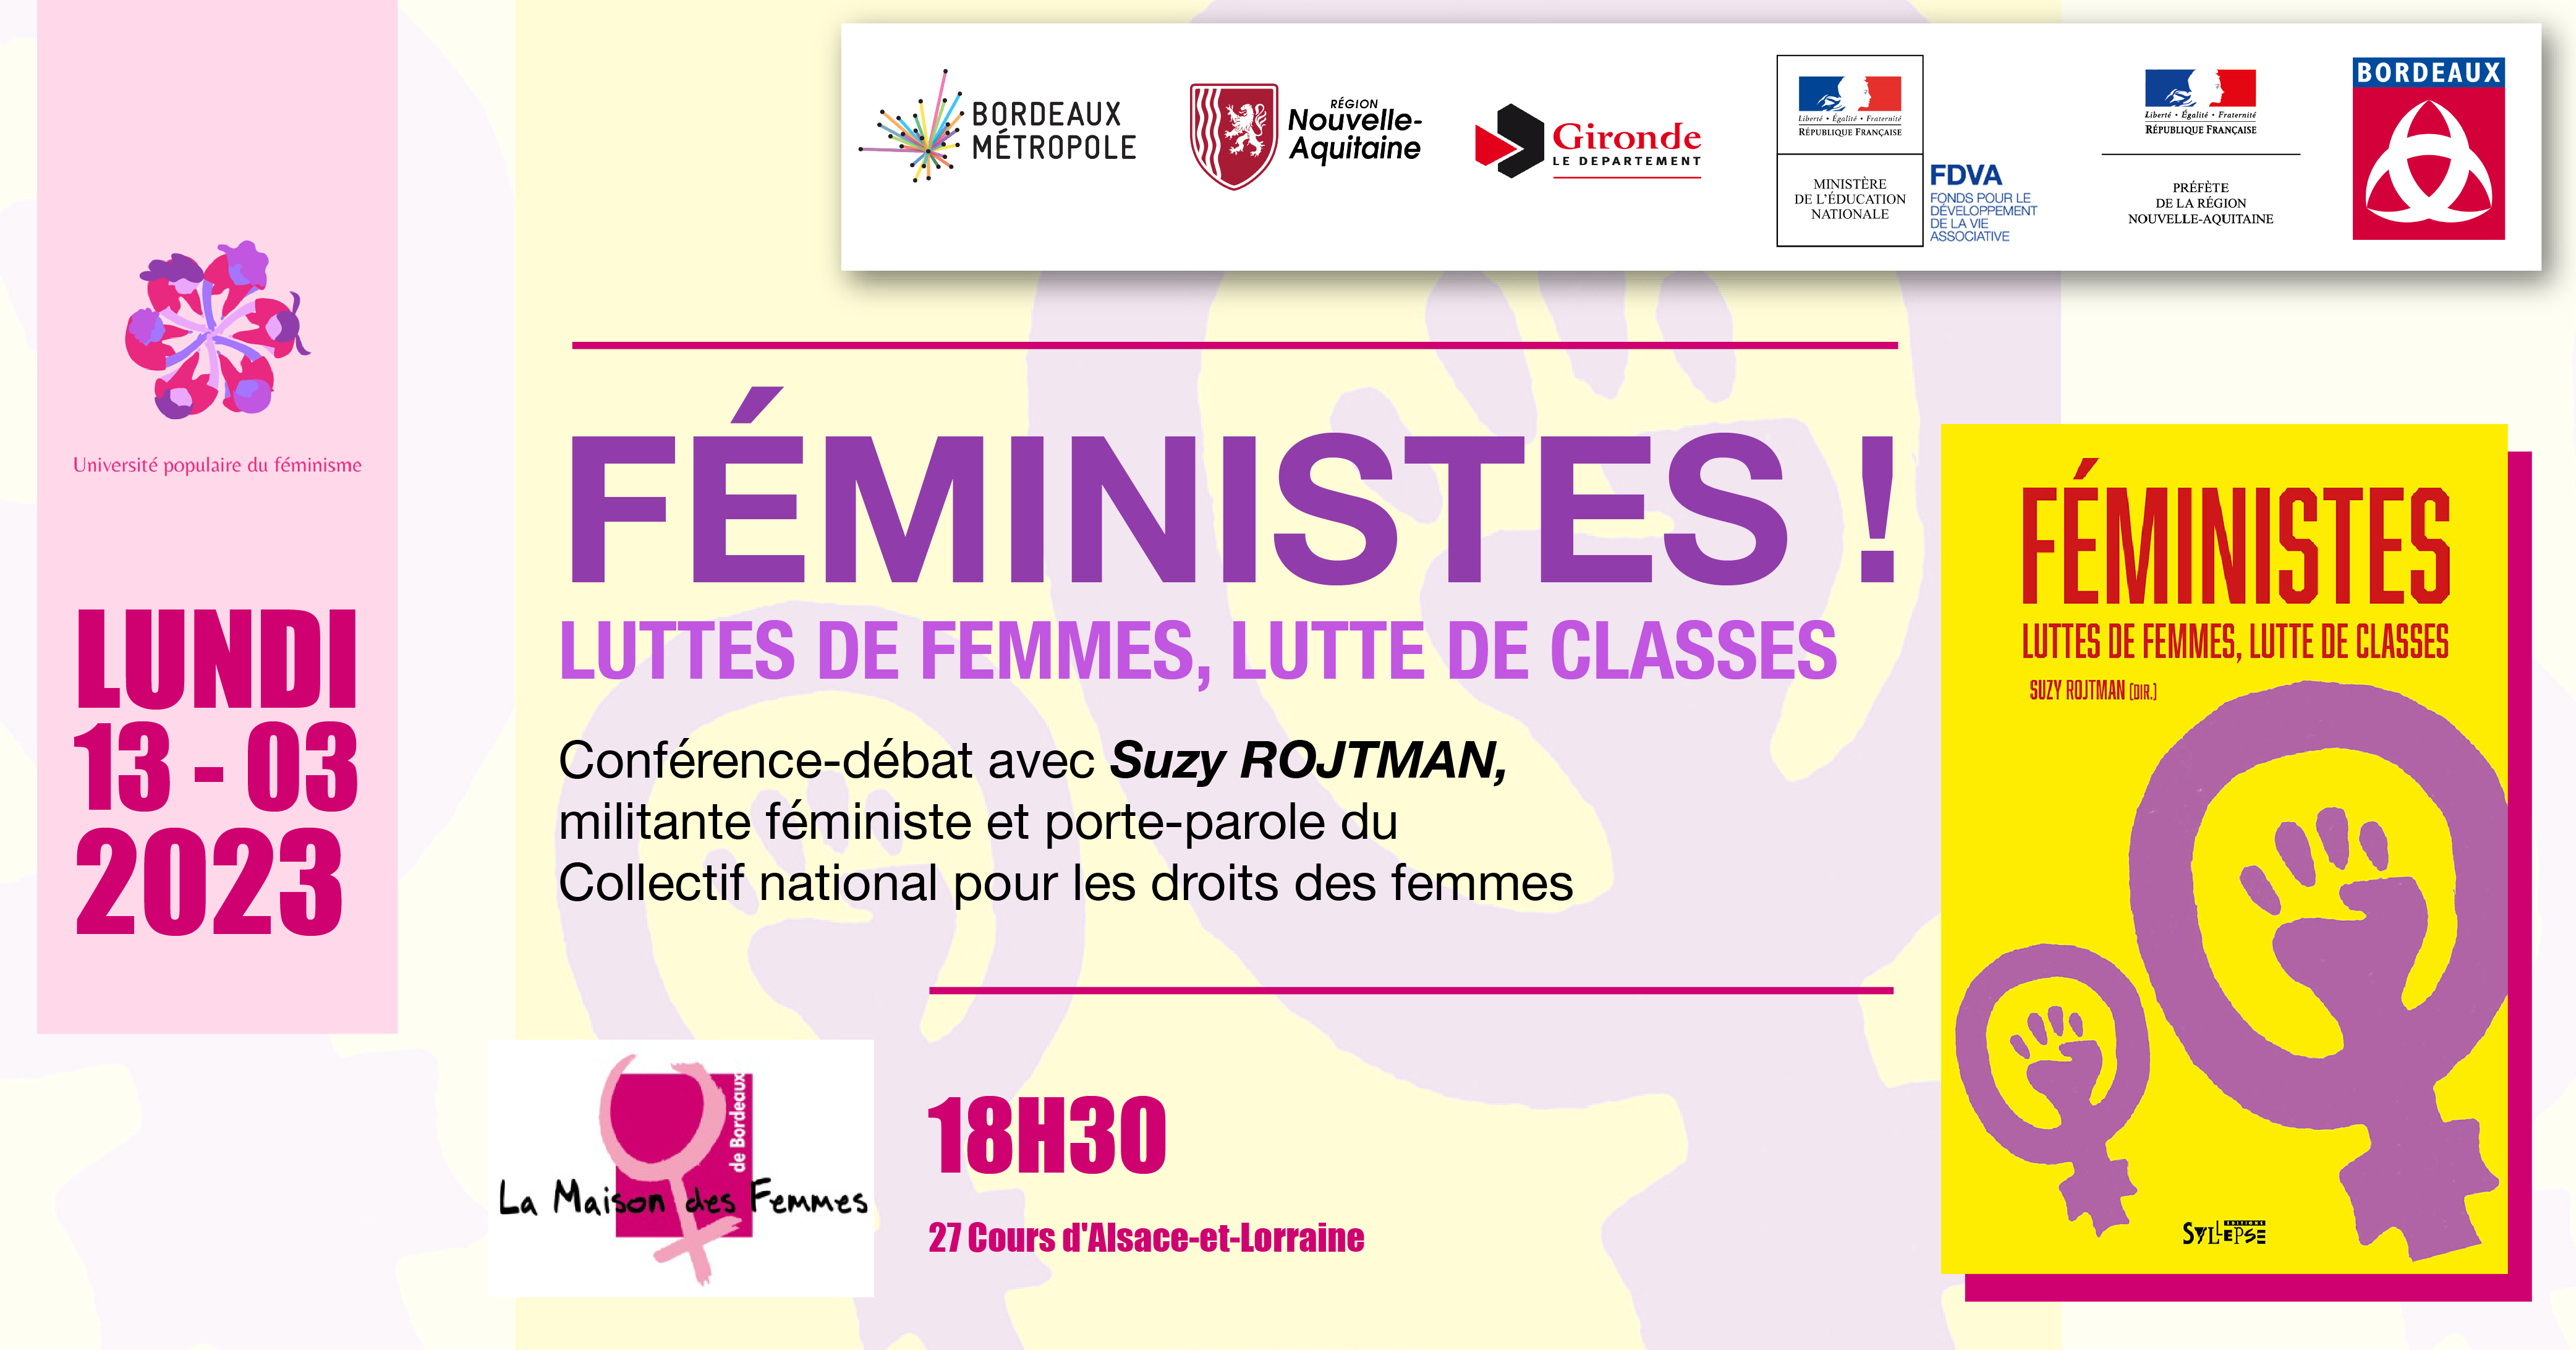 « FEMINISTES ! LUTTES DE FEMMES LUTTE DE CLASSES » conférence- débat avec Suzy ROJTMAN